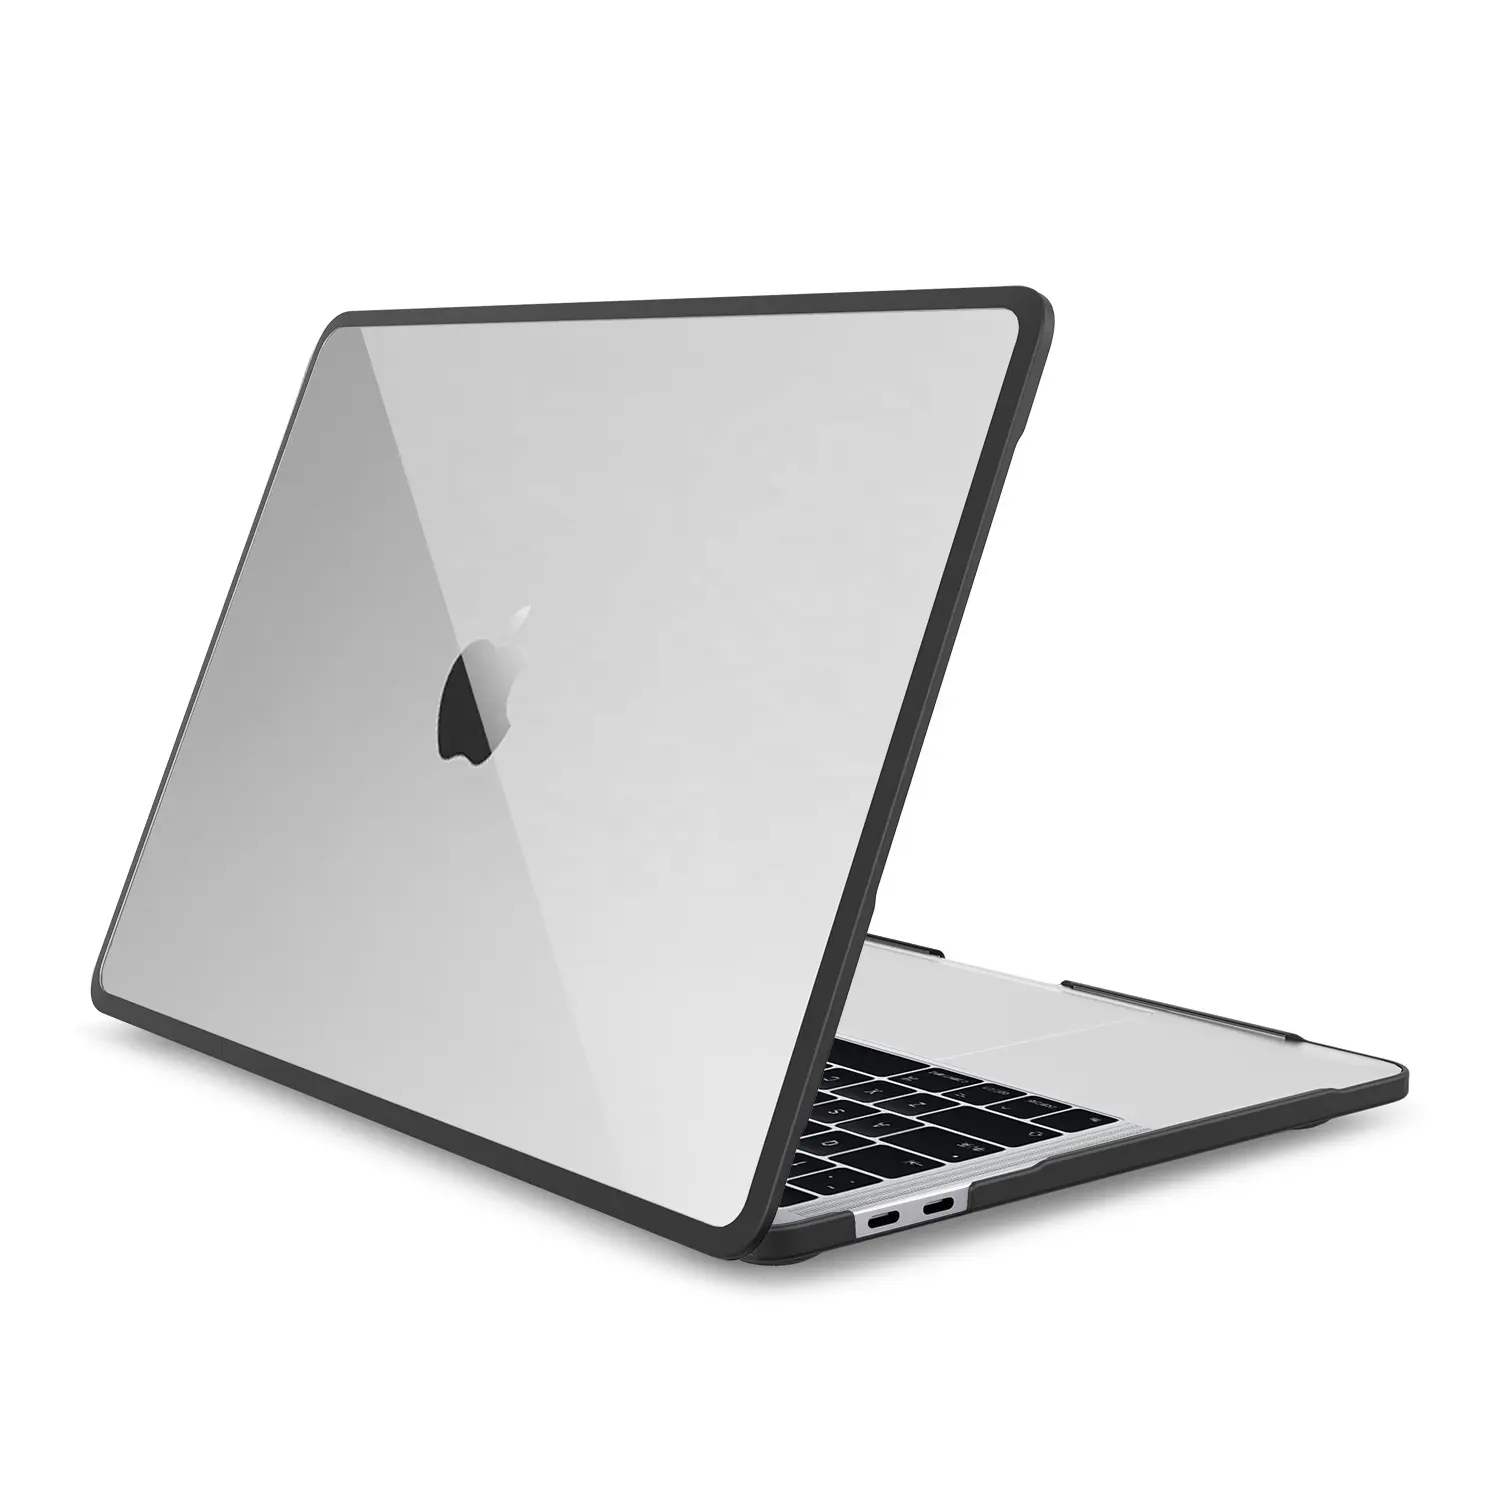 Neueste eigenmarke voller schutz schlank klar 13 zoll laptop hülle hülle für macbook hülle für laptop hülle